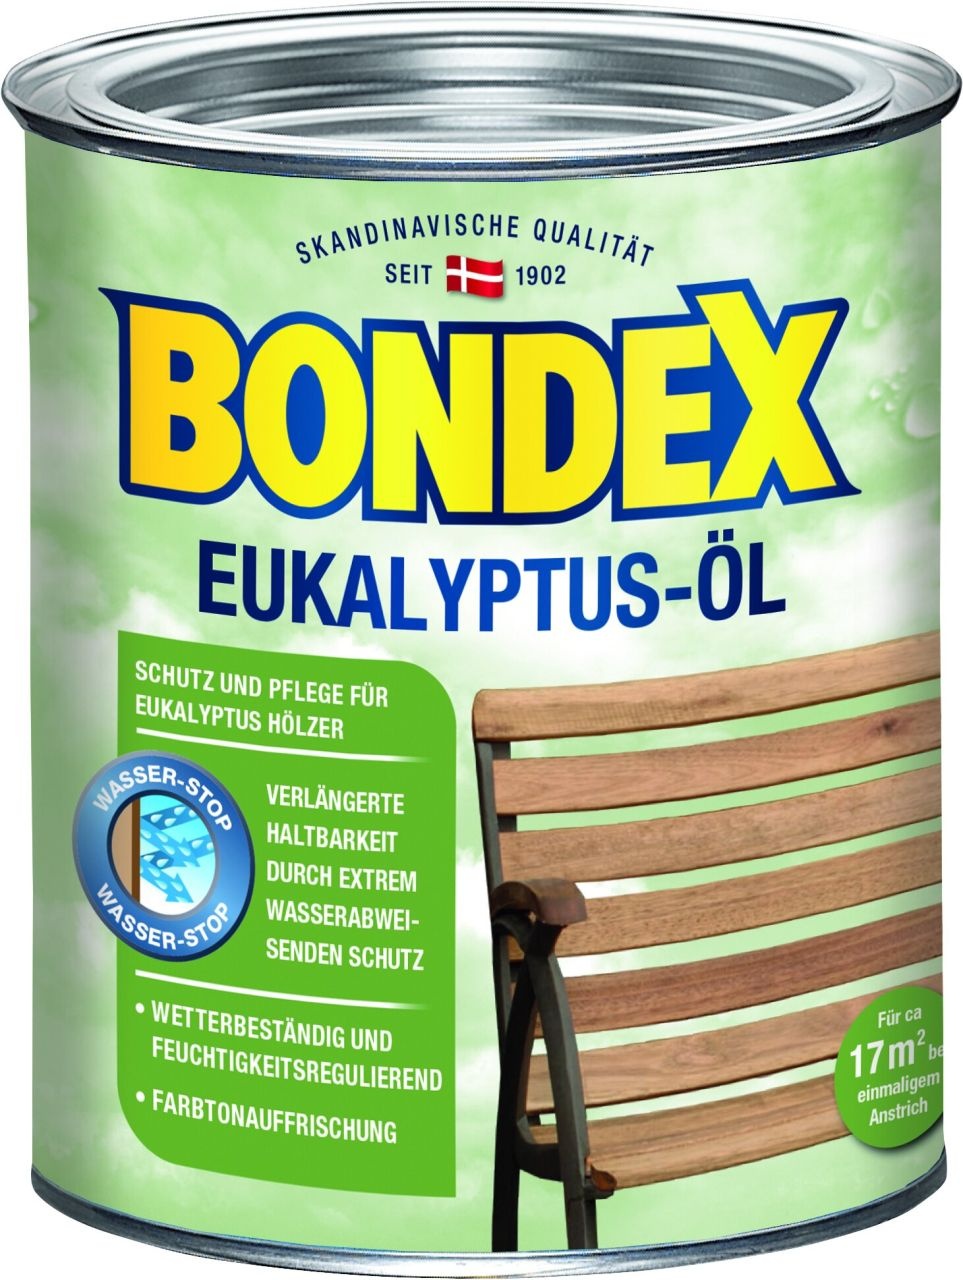 bondex eukalyptus-l